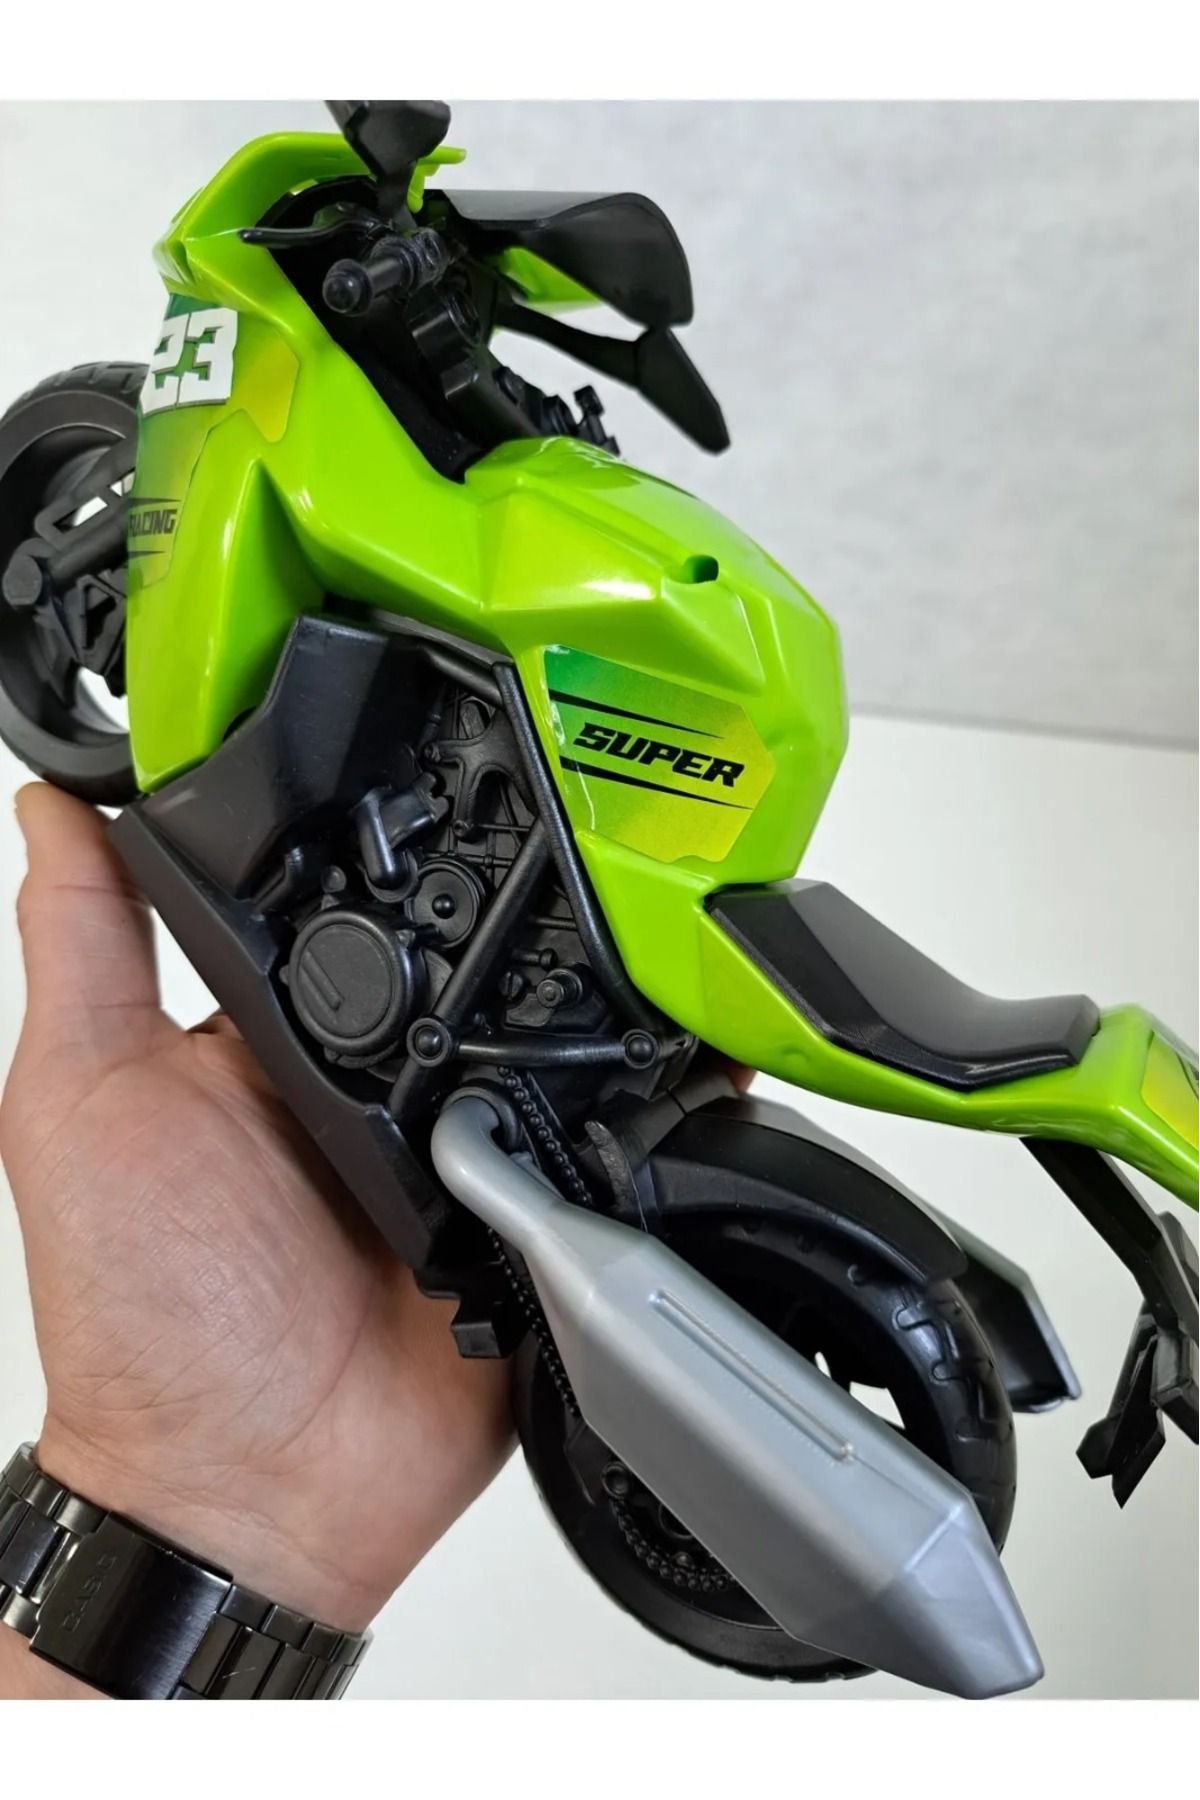 KİNKU Motor Motosiklet Motorbisiklet Motorsiklet Erkek Oyuncak Yarış Motor 28 X 18 Cm Detaylı Kırılmaz